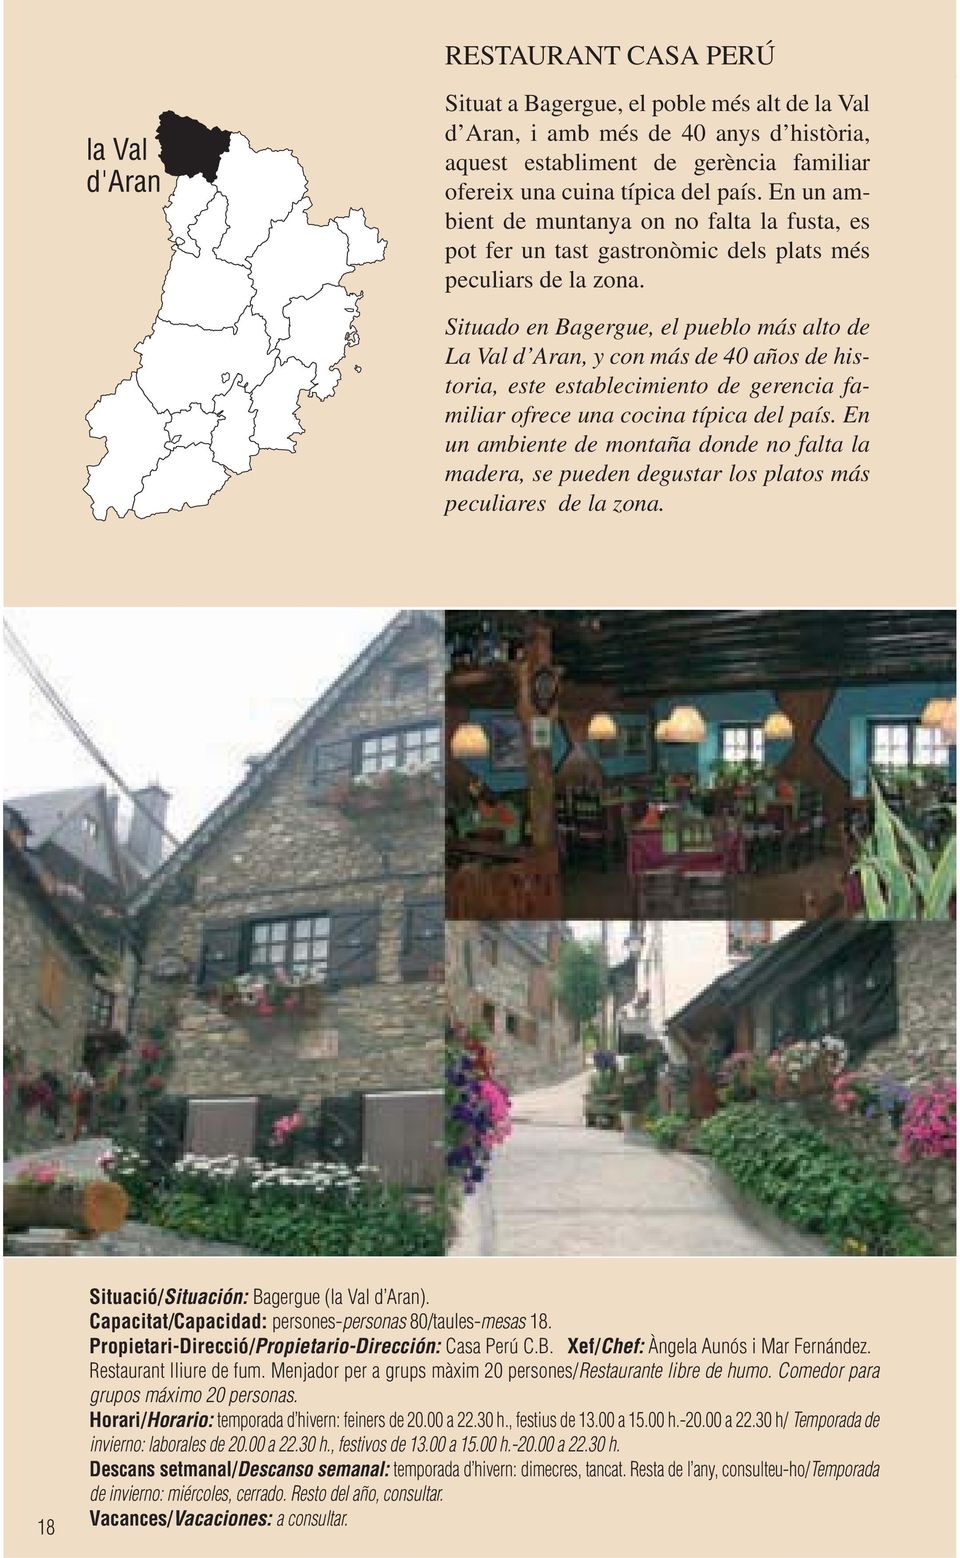 Situado en Bagergue, el pueblo más alto de La Val d Aran, y con más de 40 años de historia, este establecimiento de gerencia familiar ofrece una cocina típica del país.